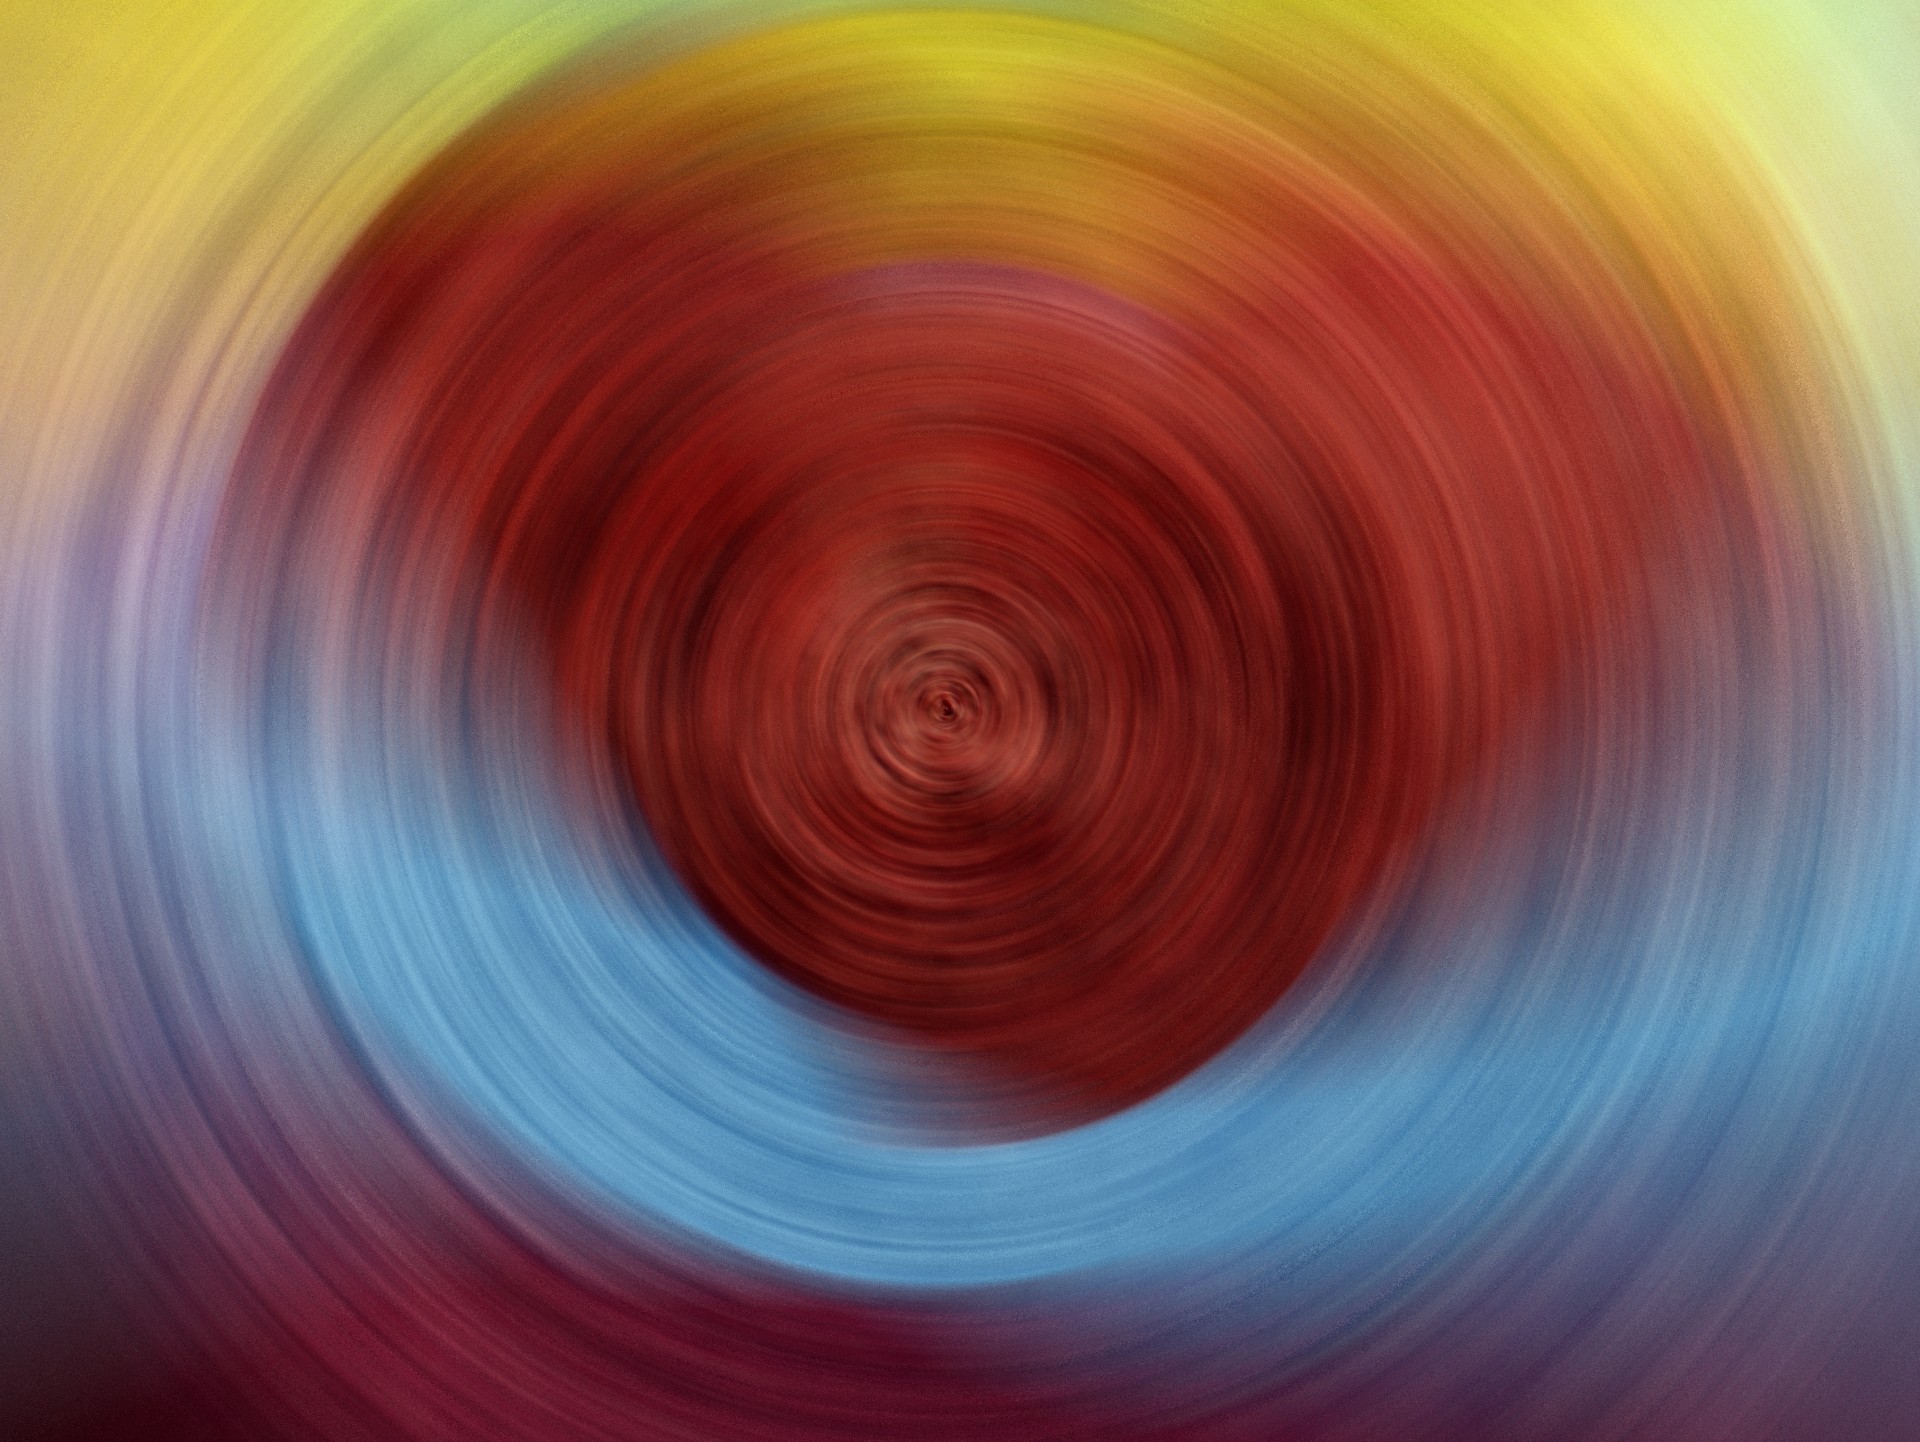 background spiral round free photo